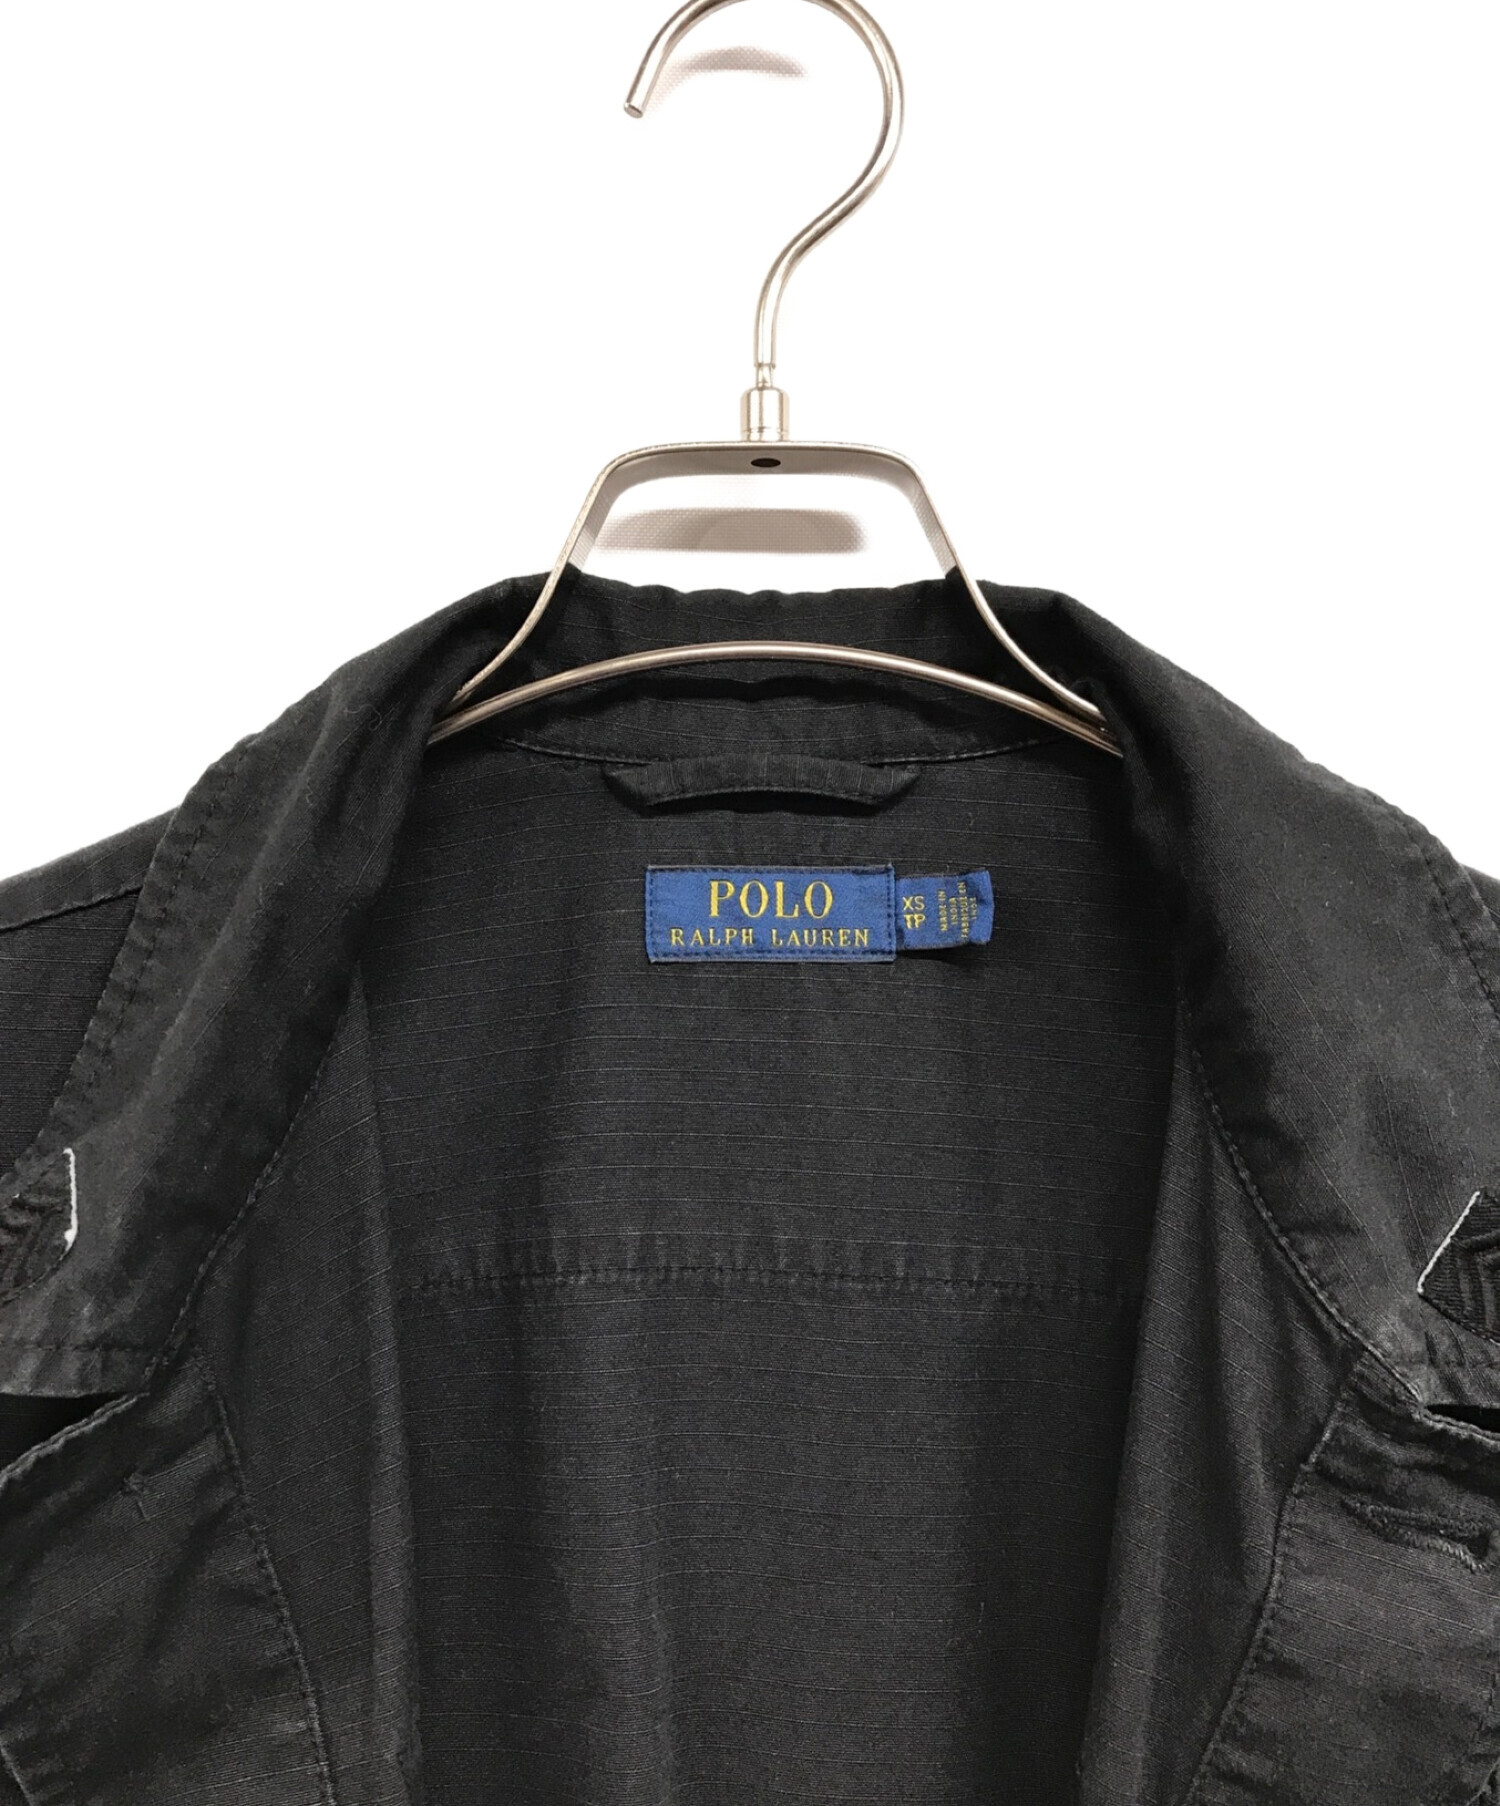 POLO RALPH LAUREN (ポロ・ラルフローレン) ファティーグジャケット ブラック サイズ:XS